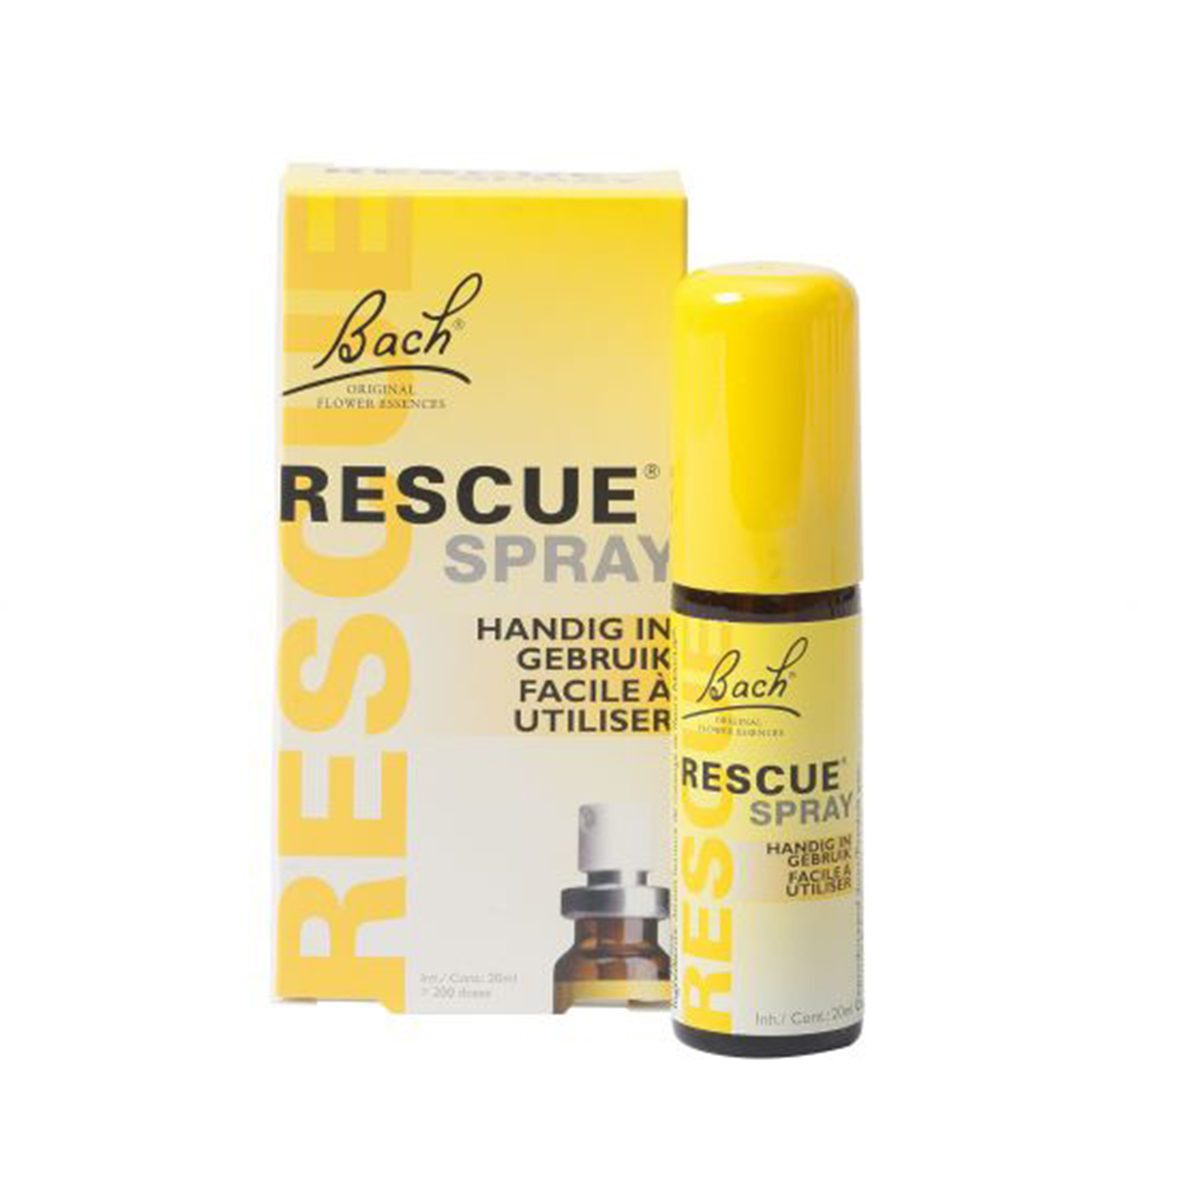 Bach Rescue spray voor huisdieren